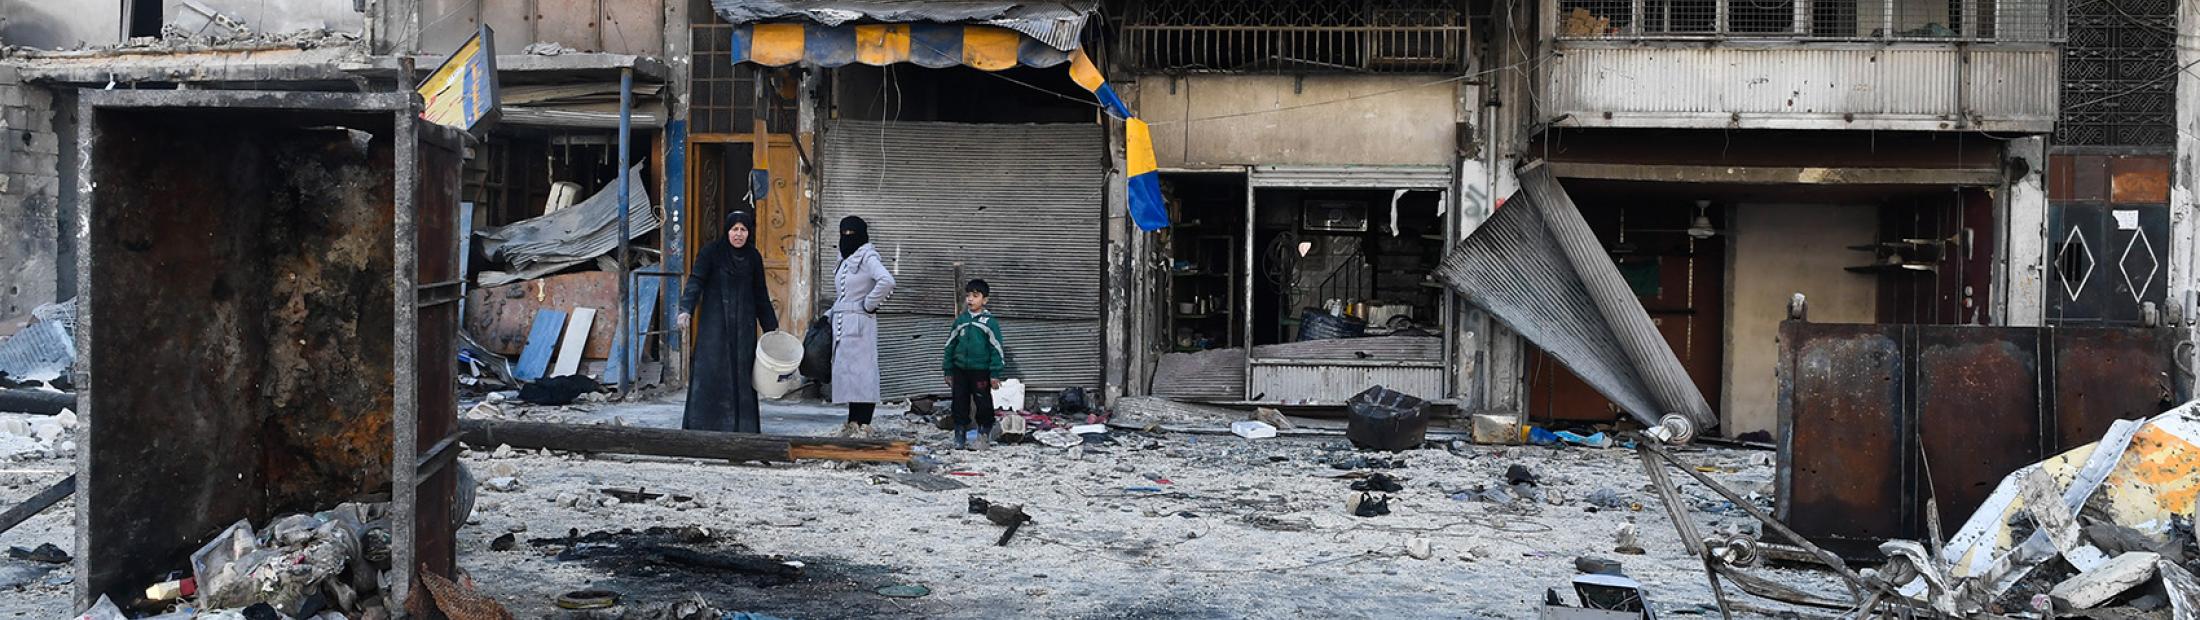 Guerra en Siria 2017: ACNUR y organizaciones de la ONU exigen acceso para la ayuda humanitaria